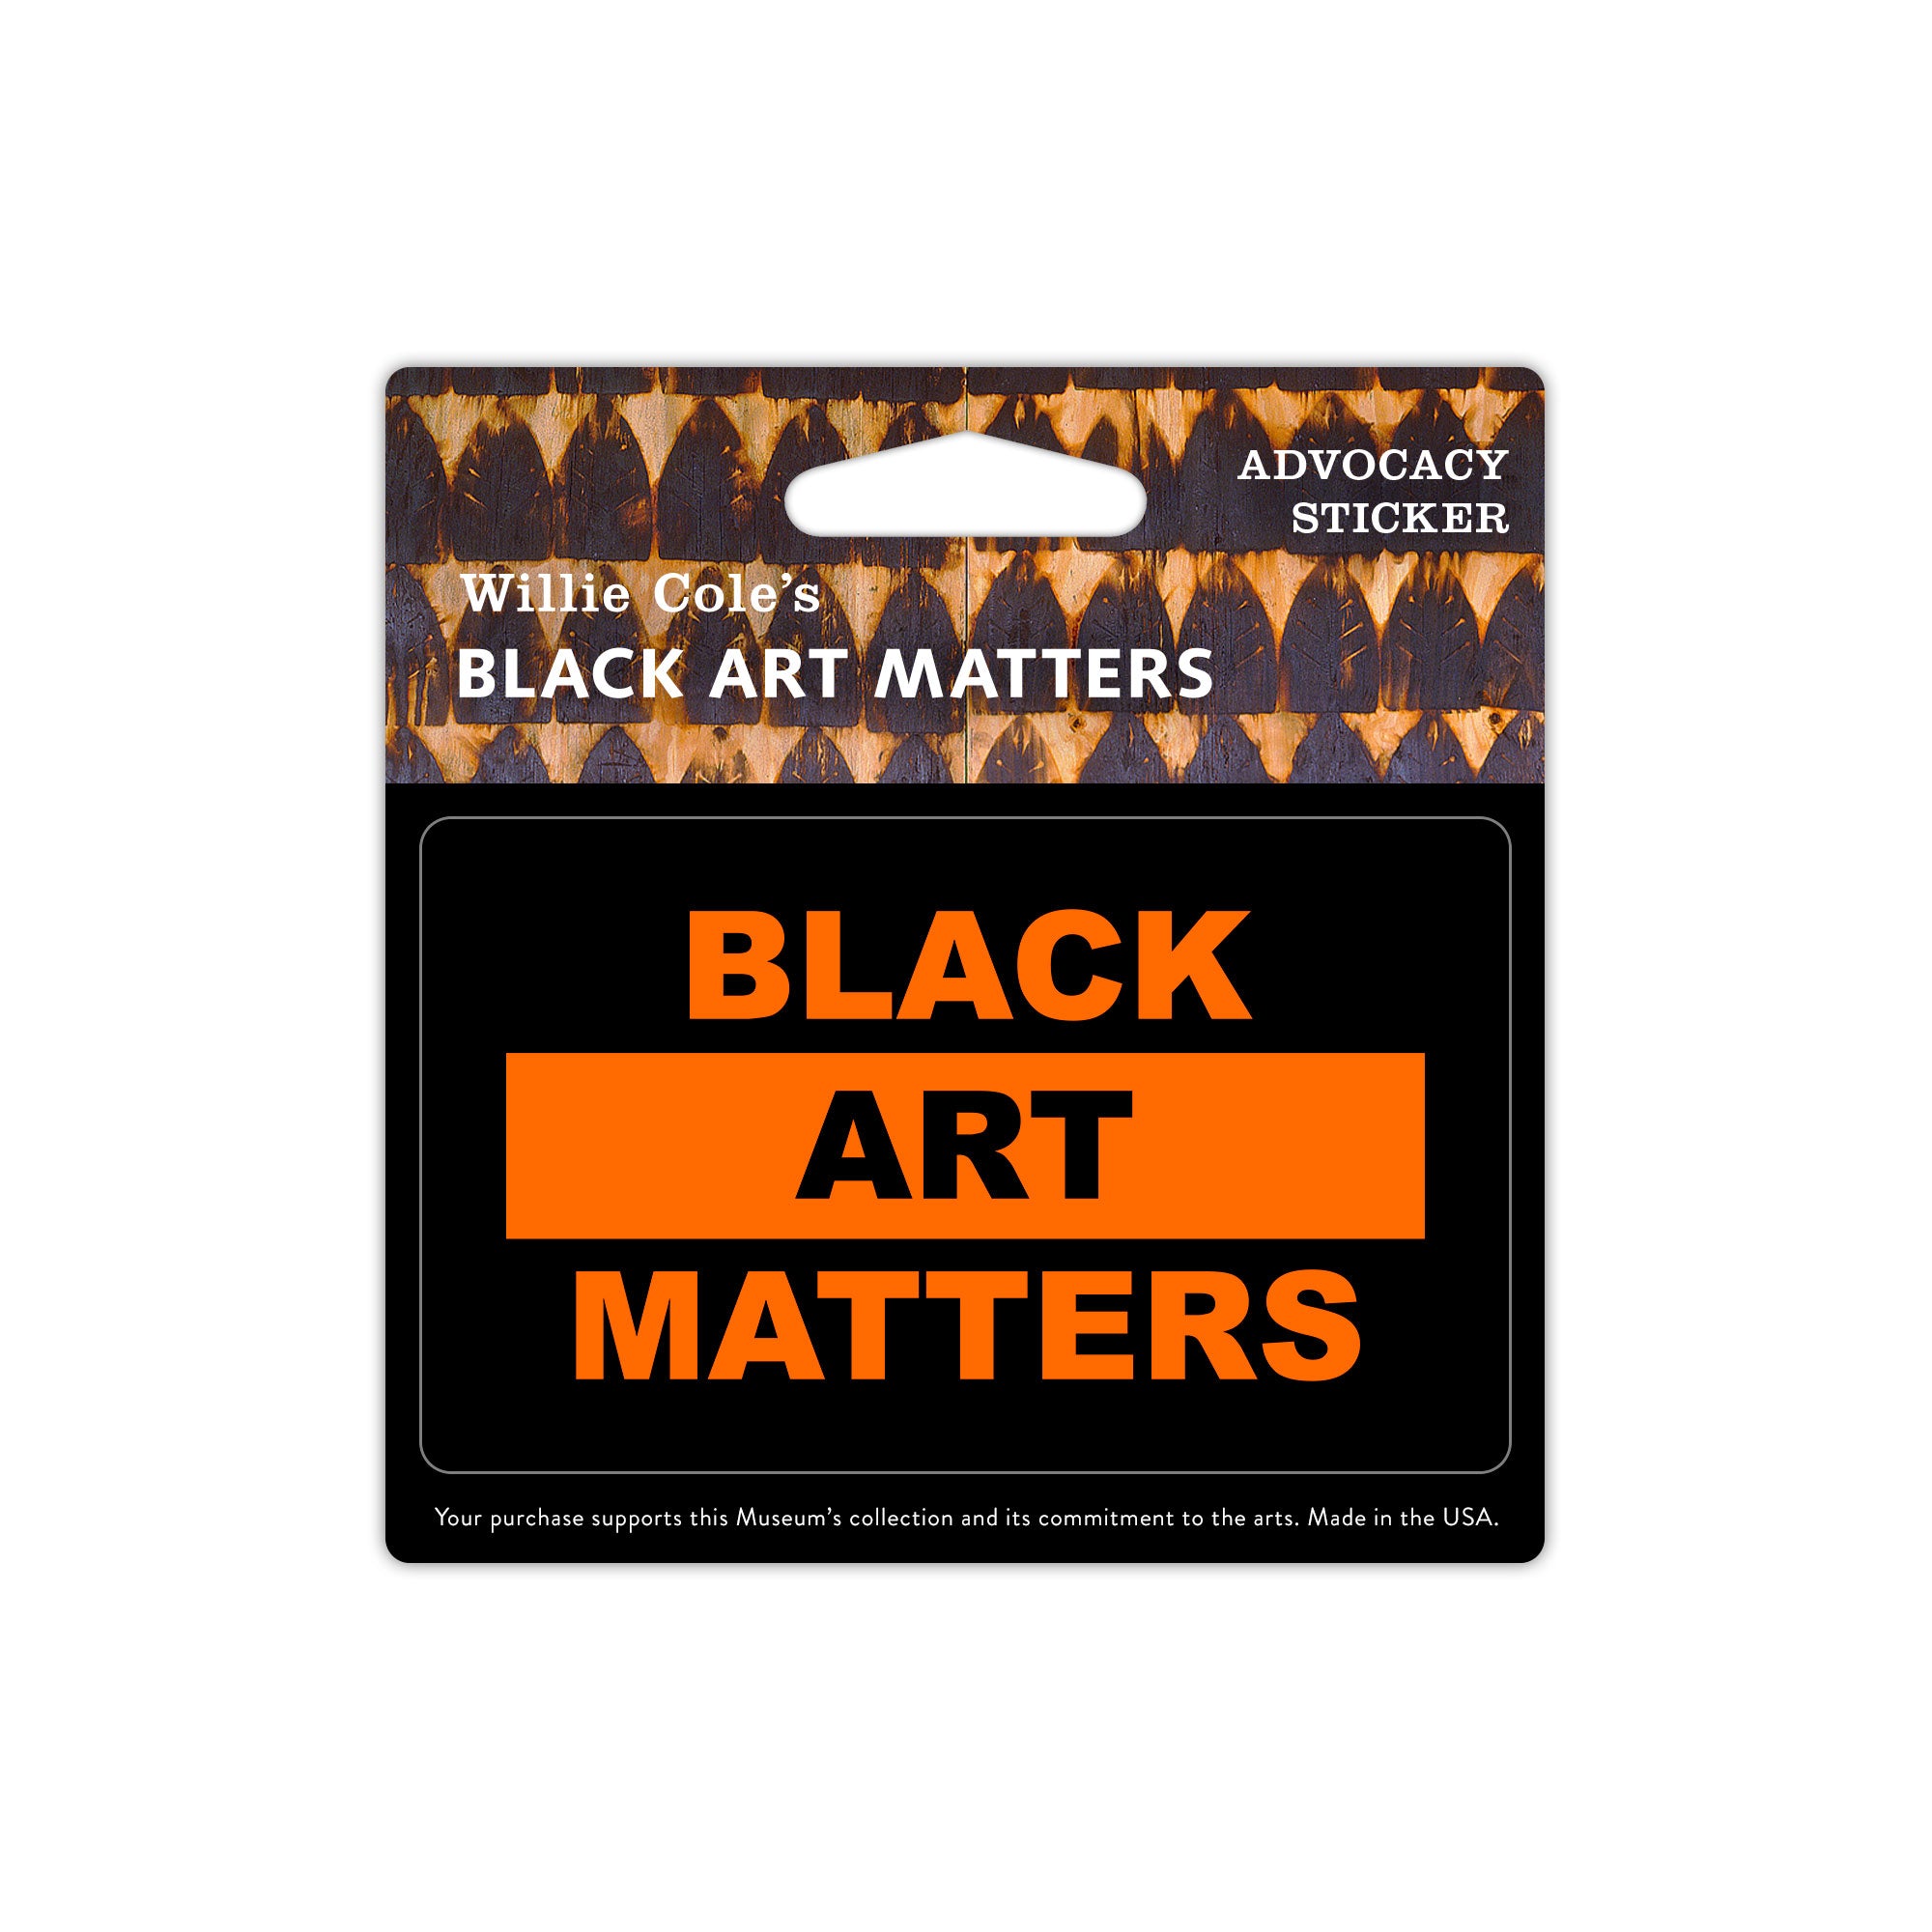 Willie Cole Black Art Matters Sticker